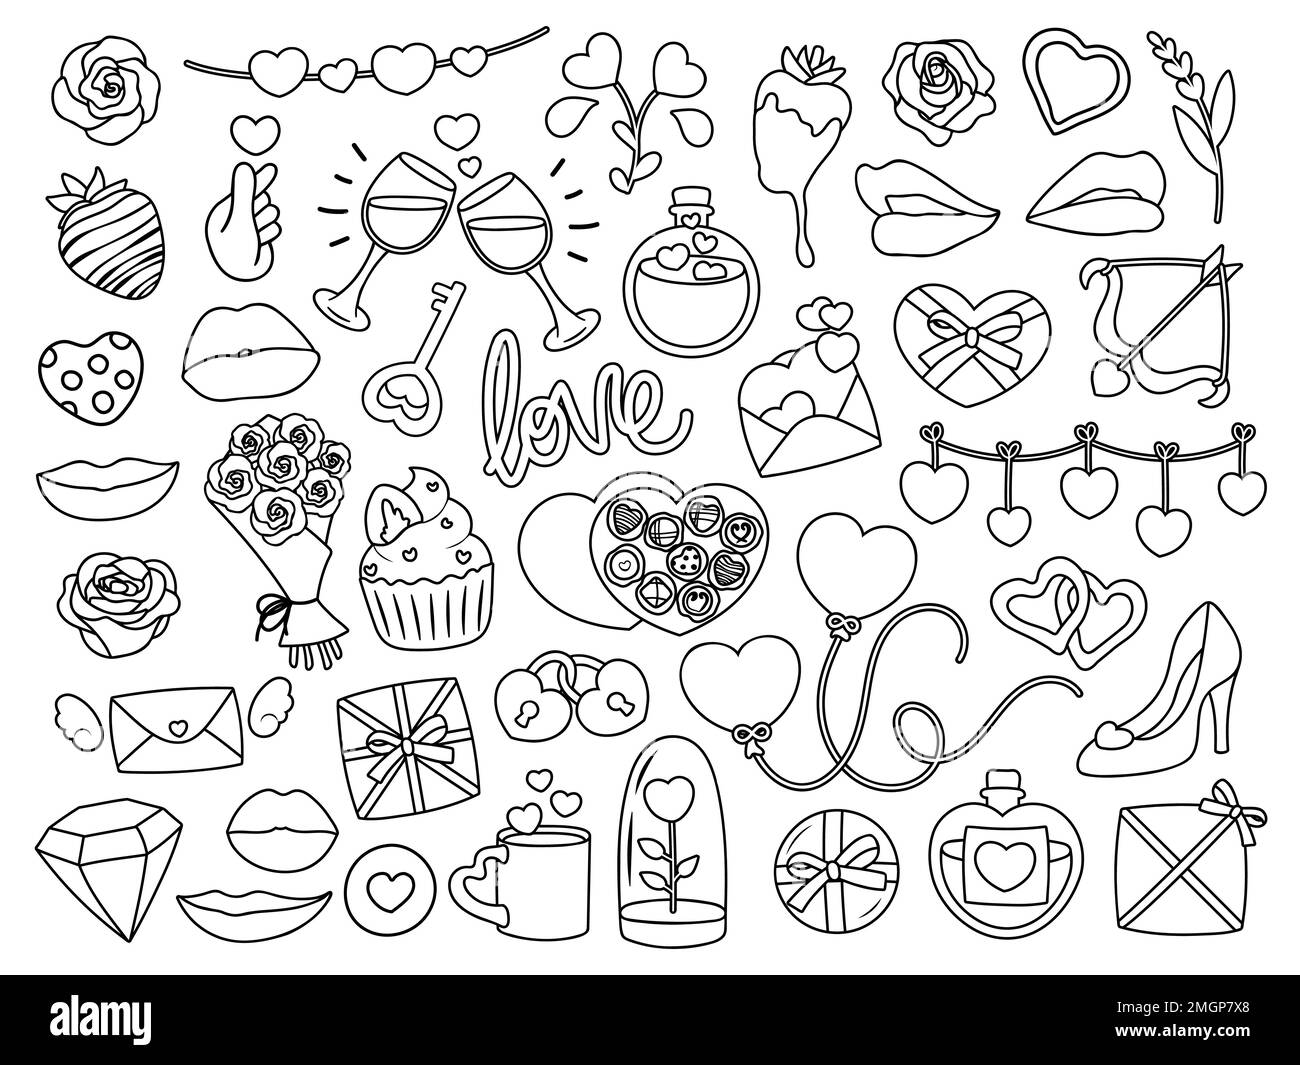 Colección de objetos y objetos relacionados con el día de San Valentín simple y lindo. Ilustraciones vectoriales en blanco y negro para colorear. Ilustración del Vector